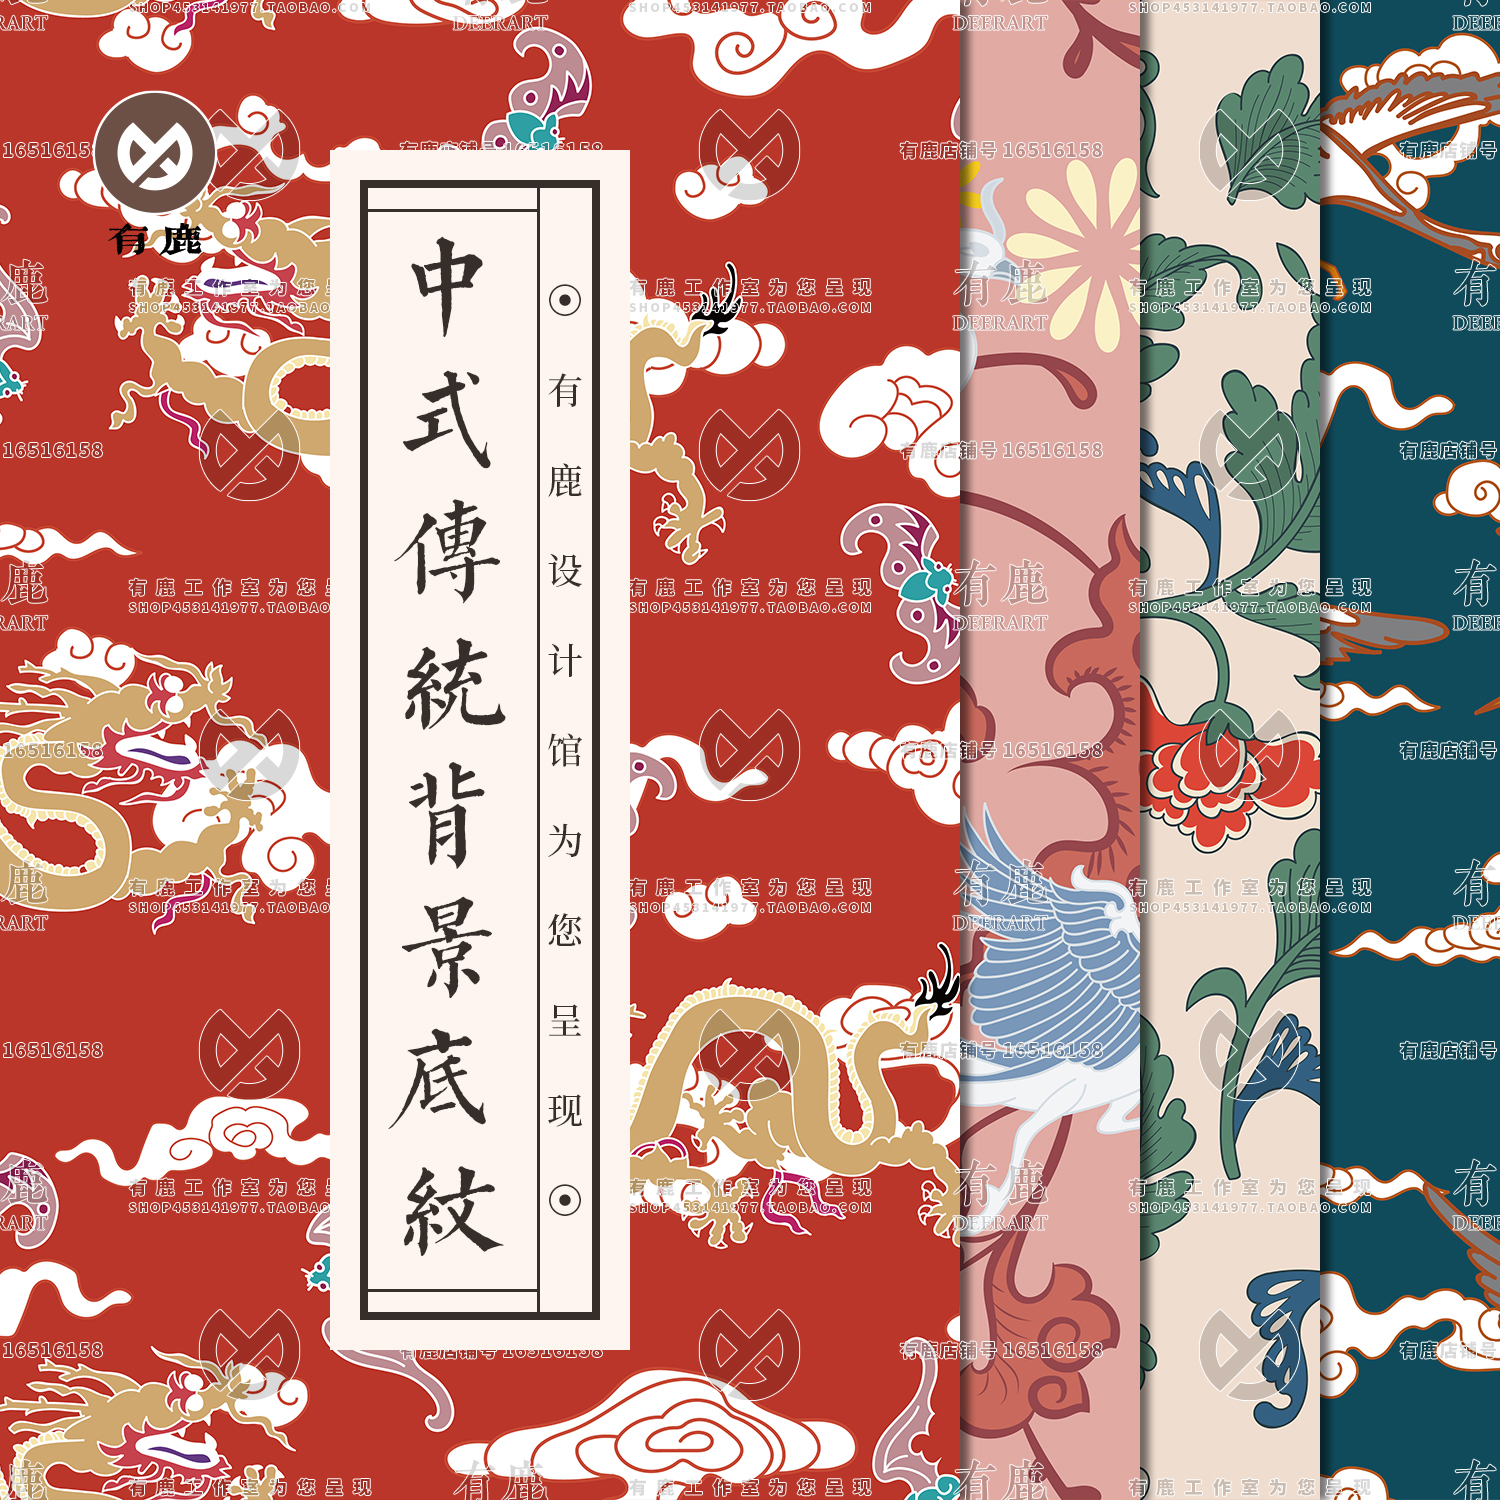 中式传统手绘吉祥龙凤仙鹤植物花草纹理背景图案纹样矢量图片素材